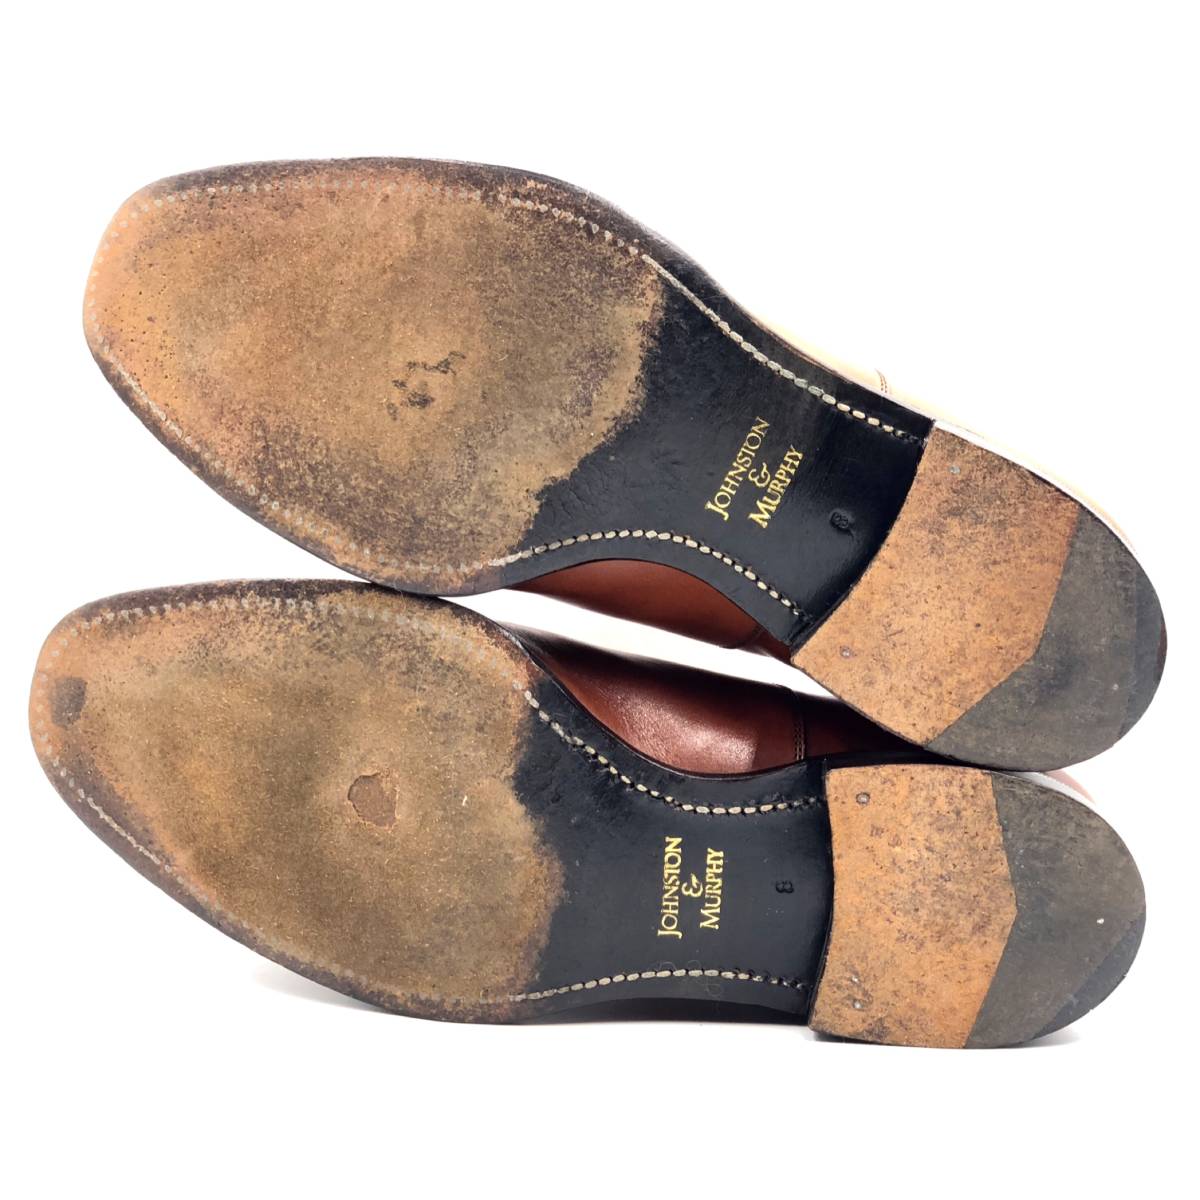 即決 Johnston&Murphy ジョンストン&マーフィー 26cm 8 メンズ レザーシューズ ストレートチップ 茶 ブラウン 革靴 皮靴 ビジネスシューズ